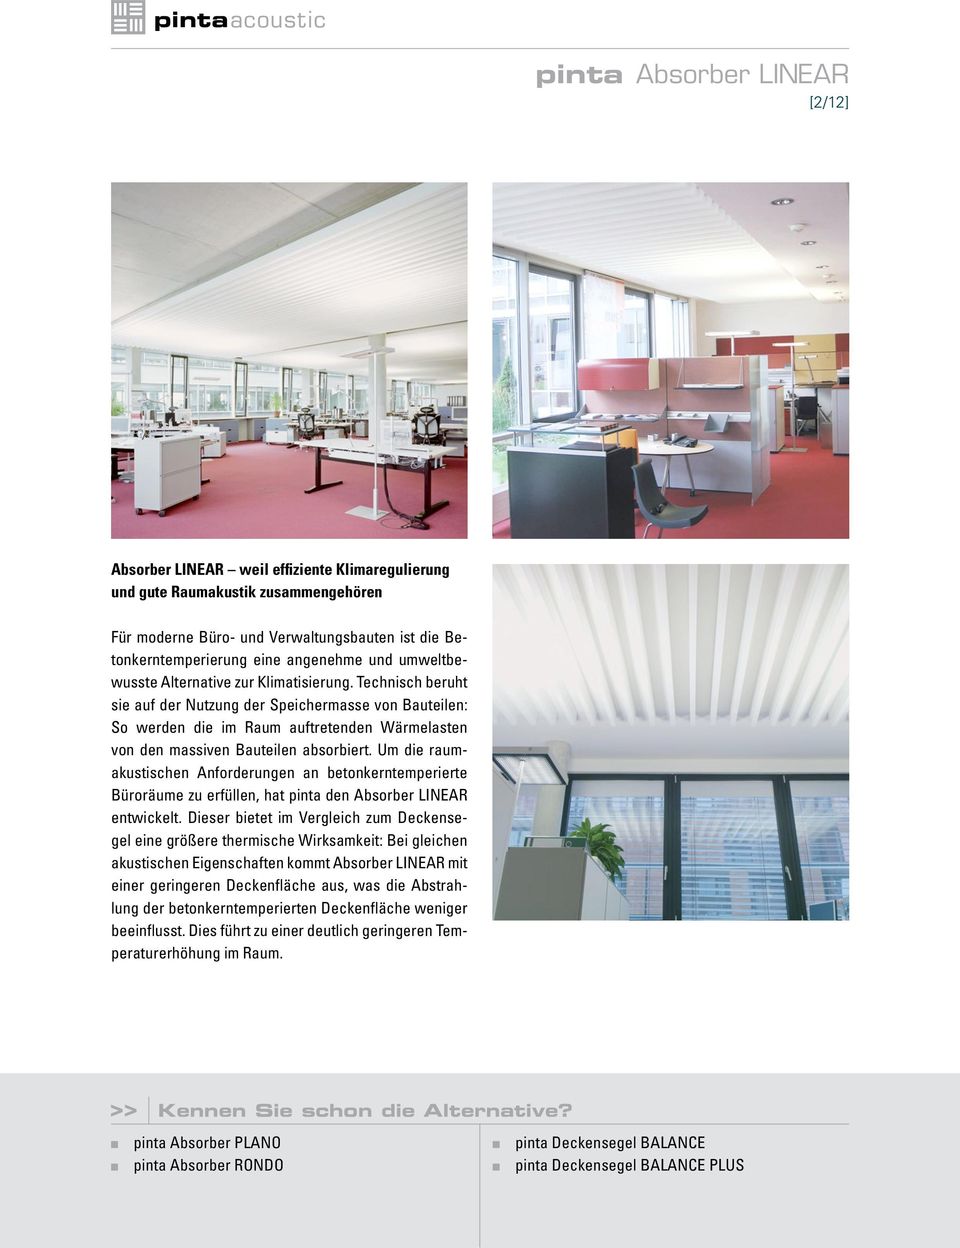 Um die raumakustischen Anforderungen an betonkerntemperierte Büroräume zu erfüllen, hat pinta den Absorber LINEAR entwickelt.